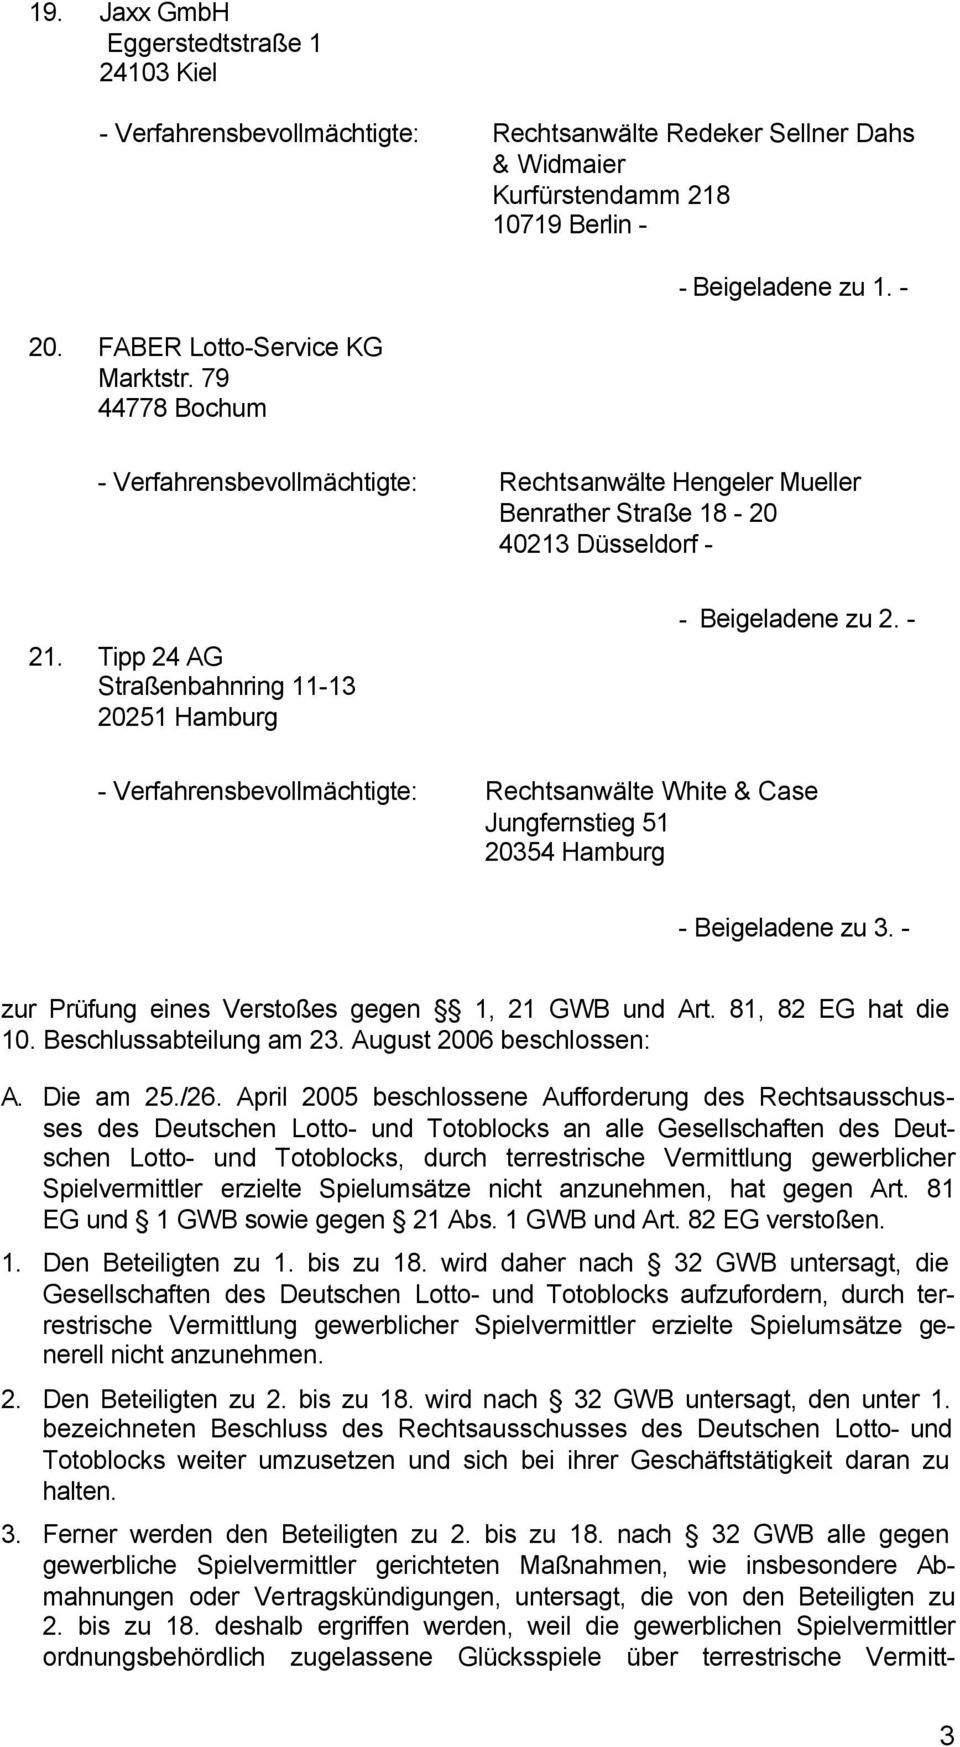 Tipp 24 AG Straßenbahnring 11-13 20251 Hamburg - Beigeladene zu 2. - - Verfahrensbevollmächtigte: Rechtsanwälte White & Case Jungfernstieg 51 20354 Hamburg - Beigeladene zu 3.